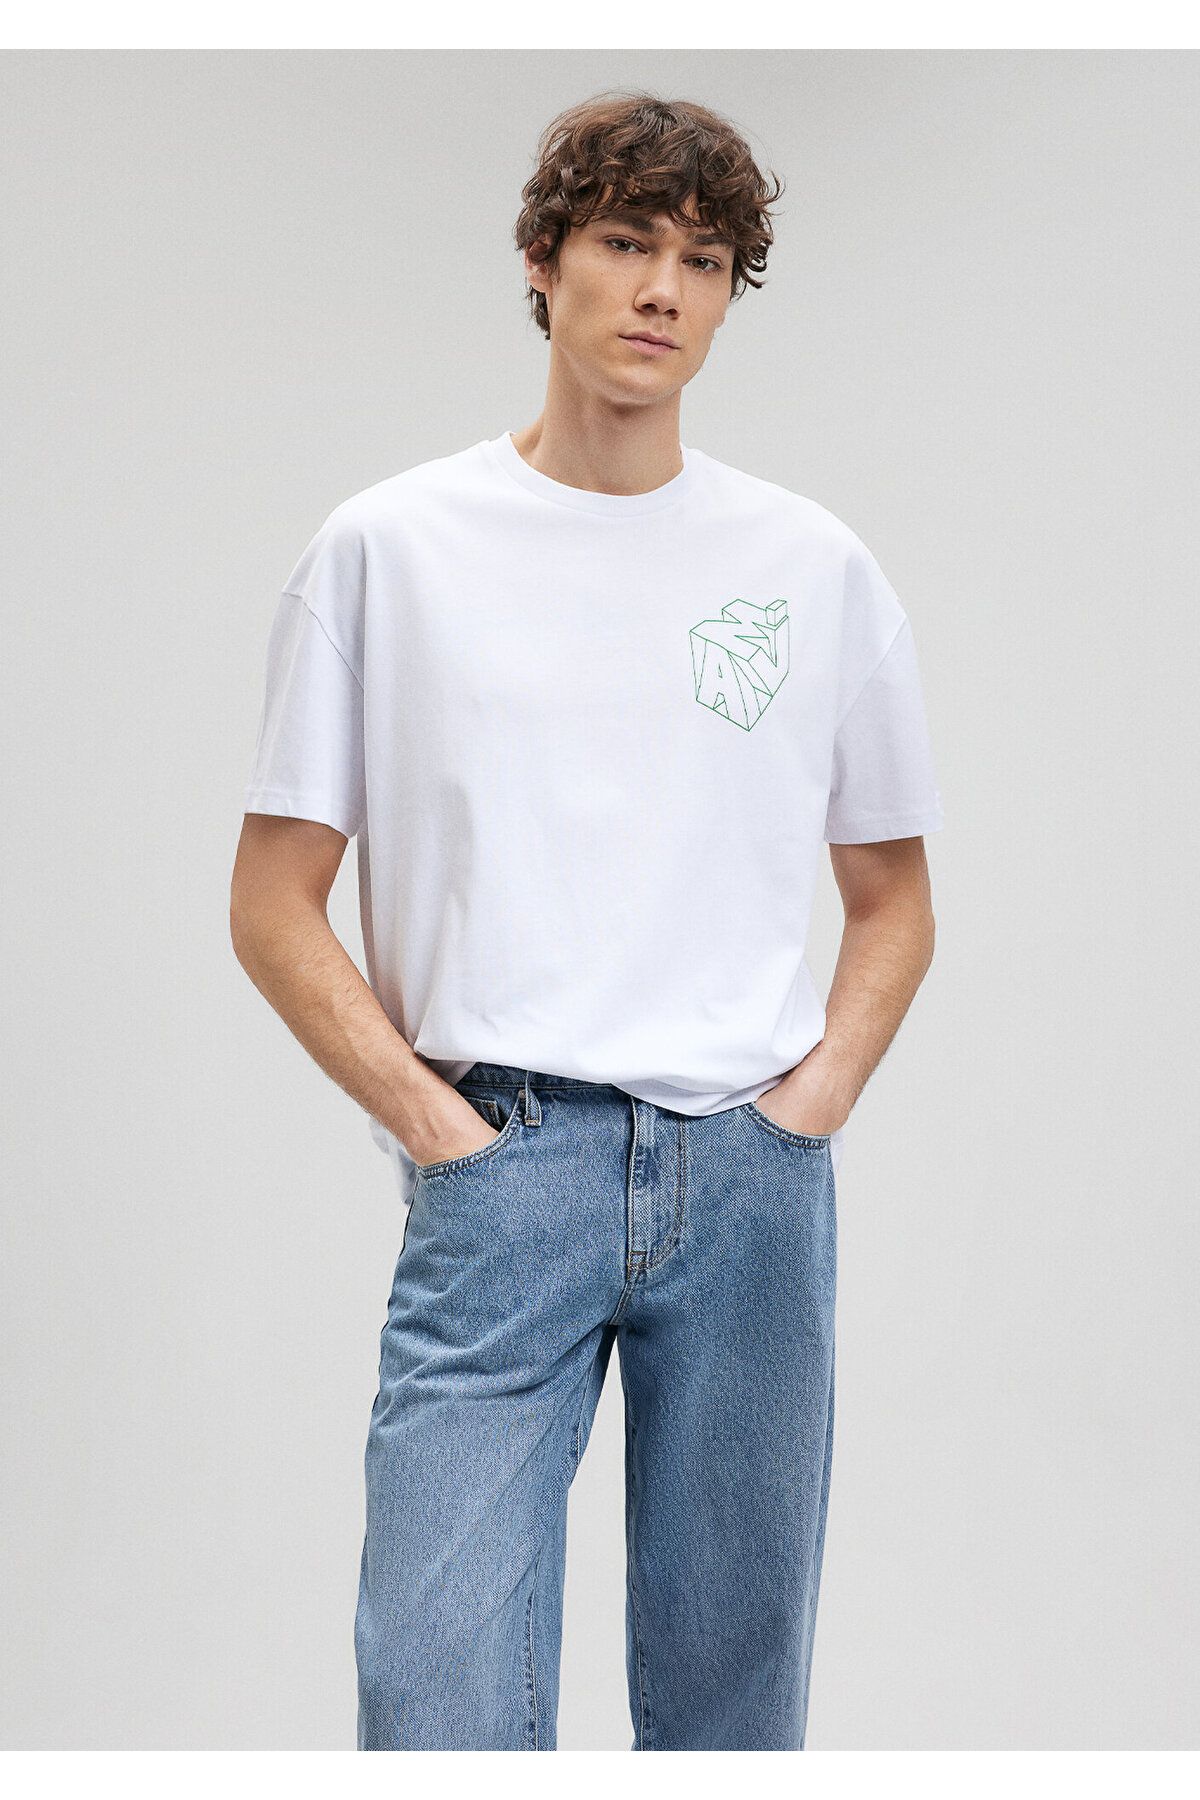 Mavi آرم چاپ شده تی شرت سفید بزرگ / بخش گسترده ای 0610320-602